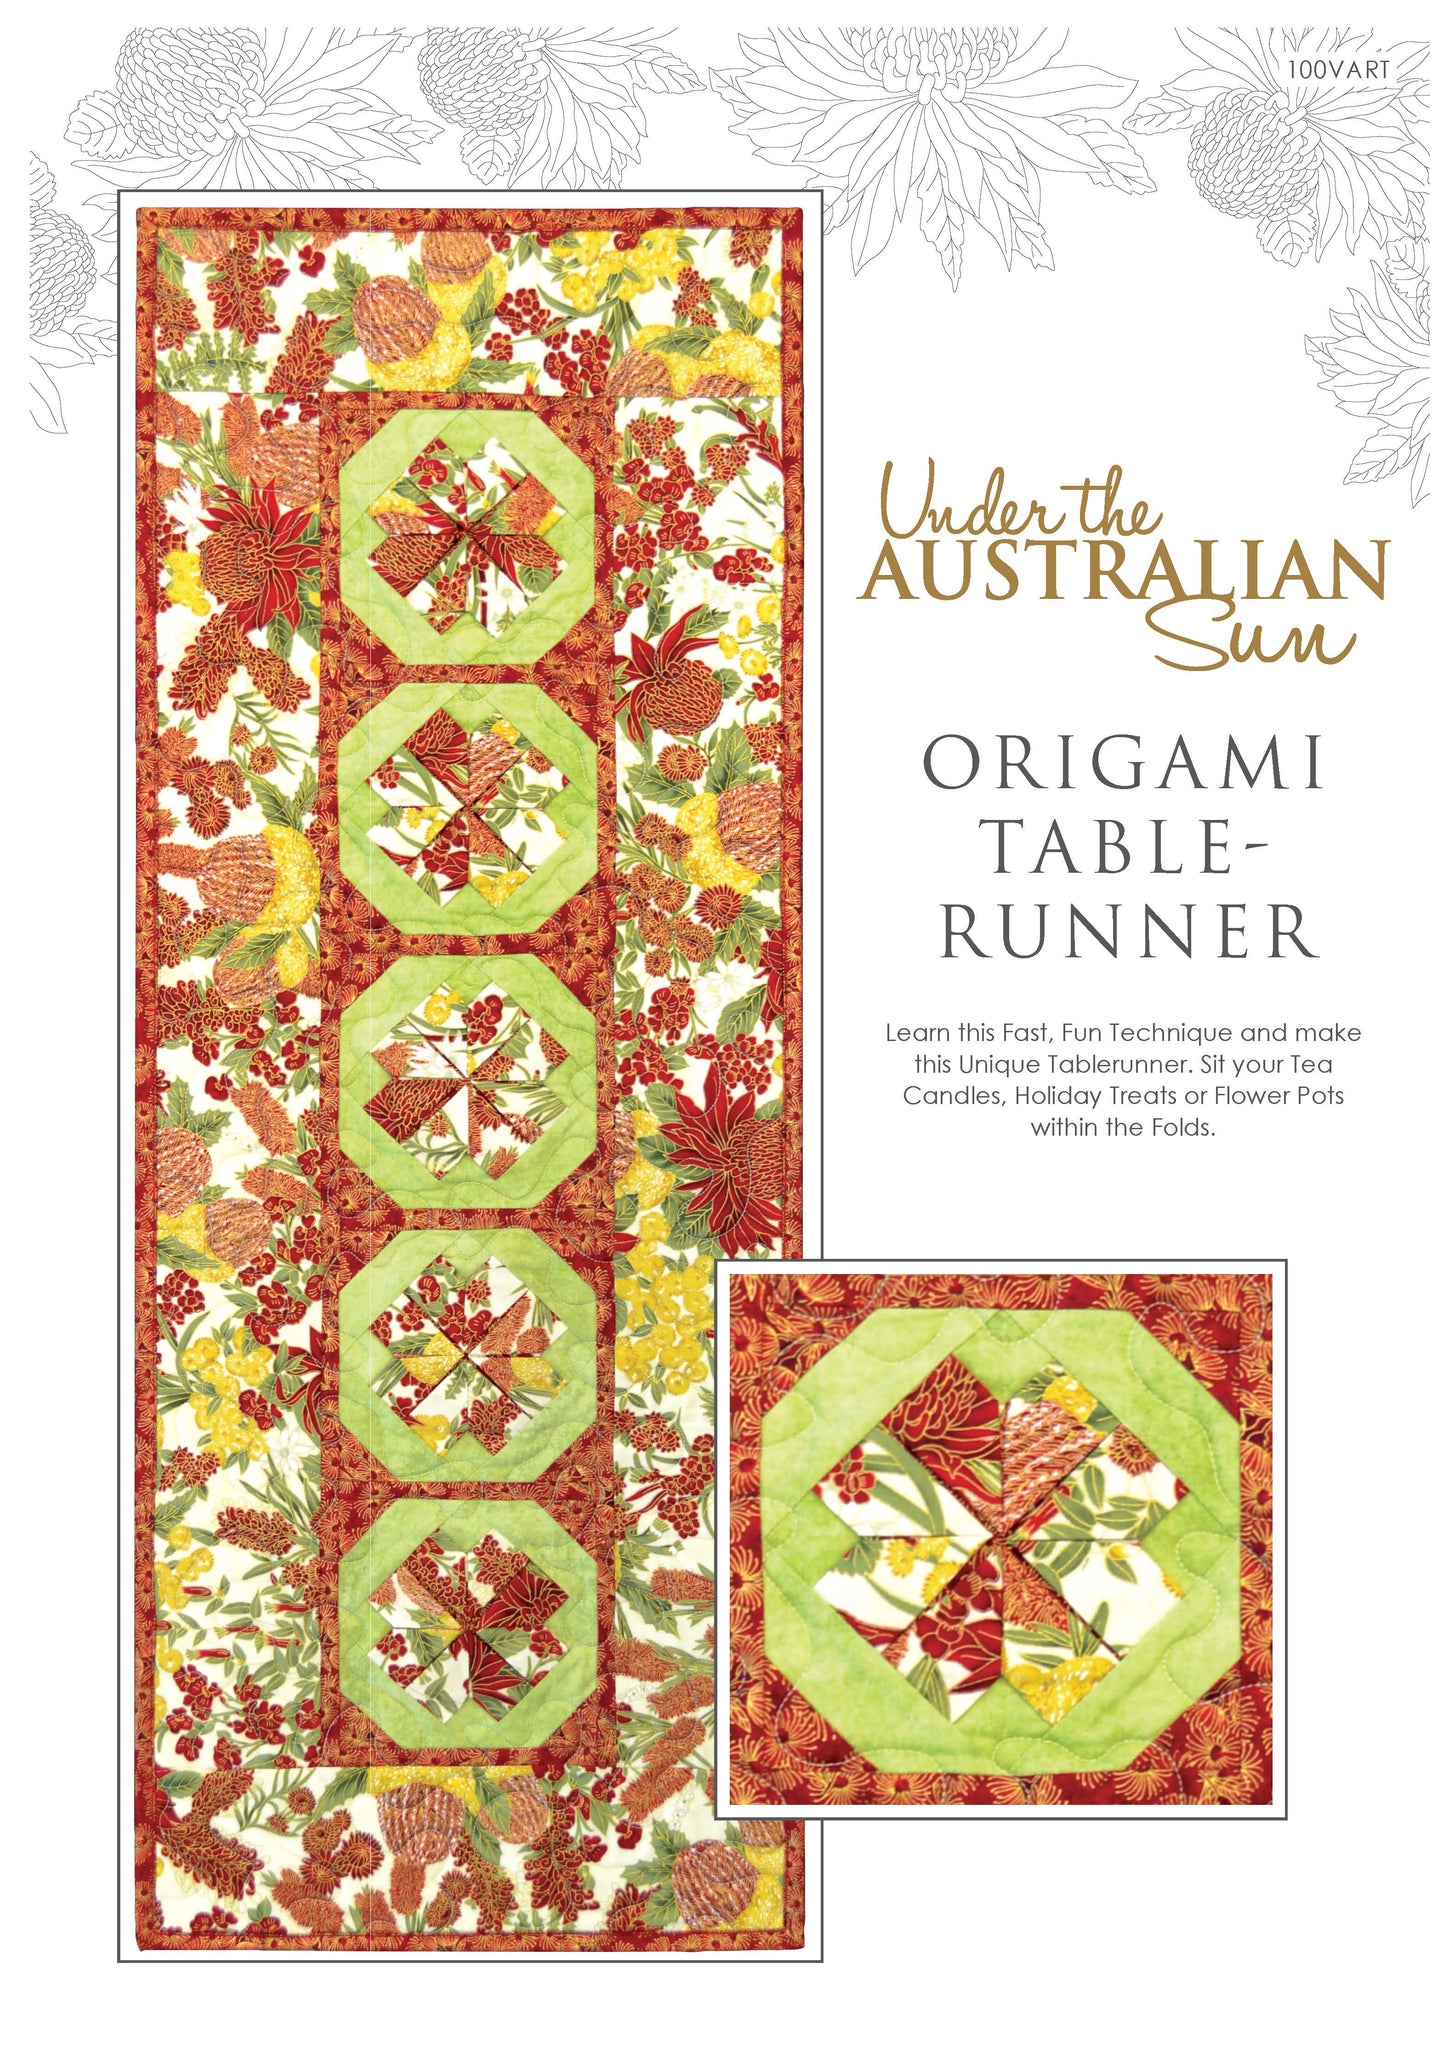 Aussie Origami Table Runner - 100VART